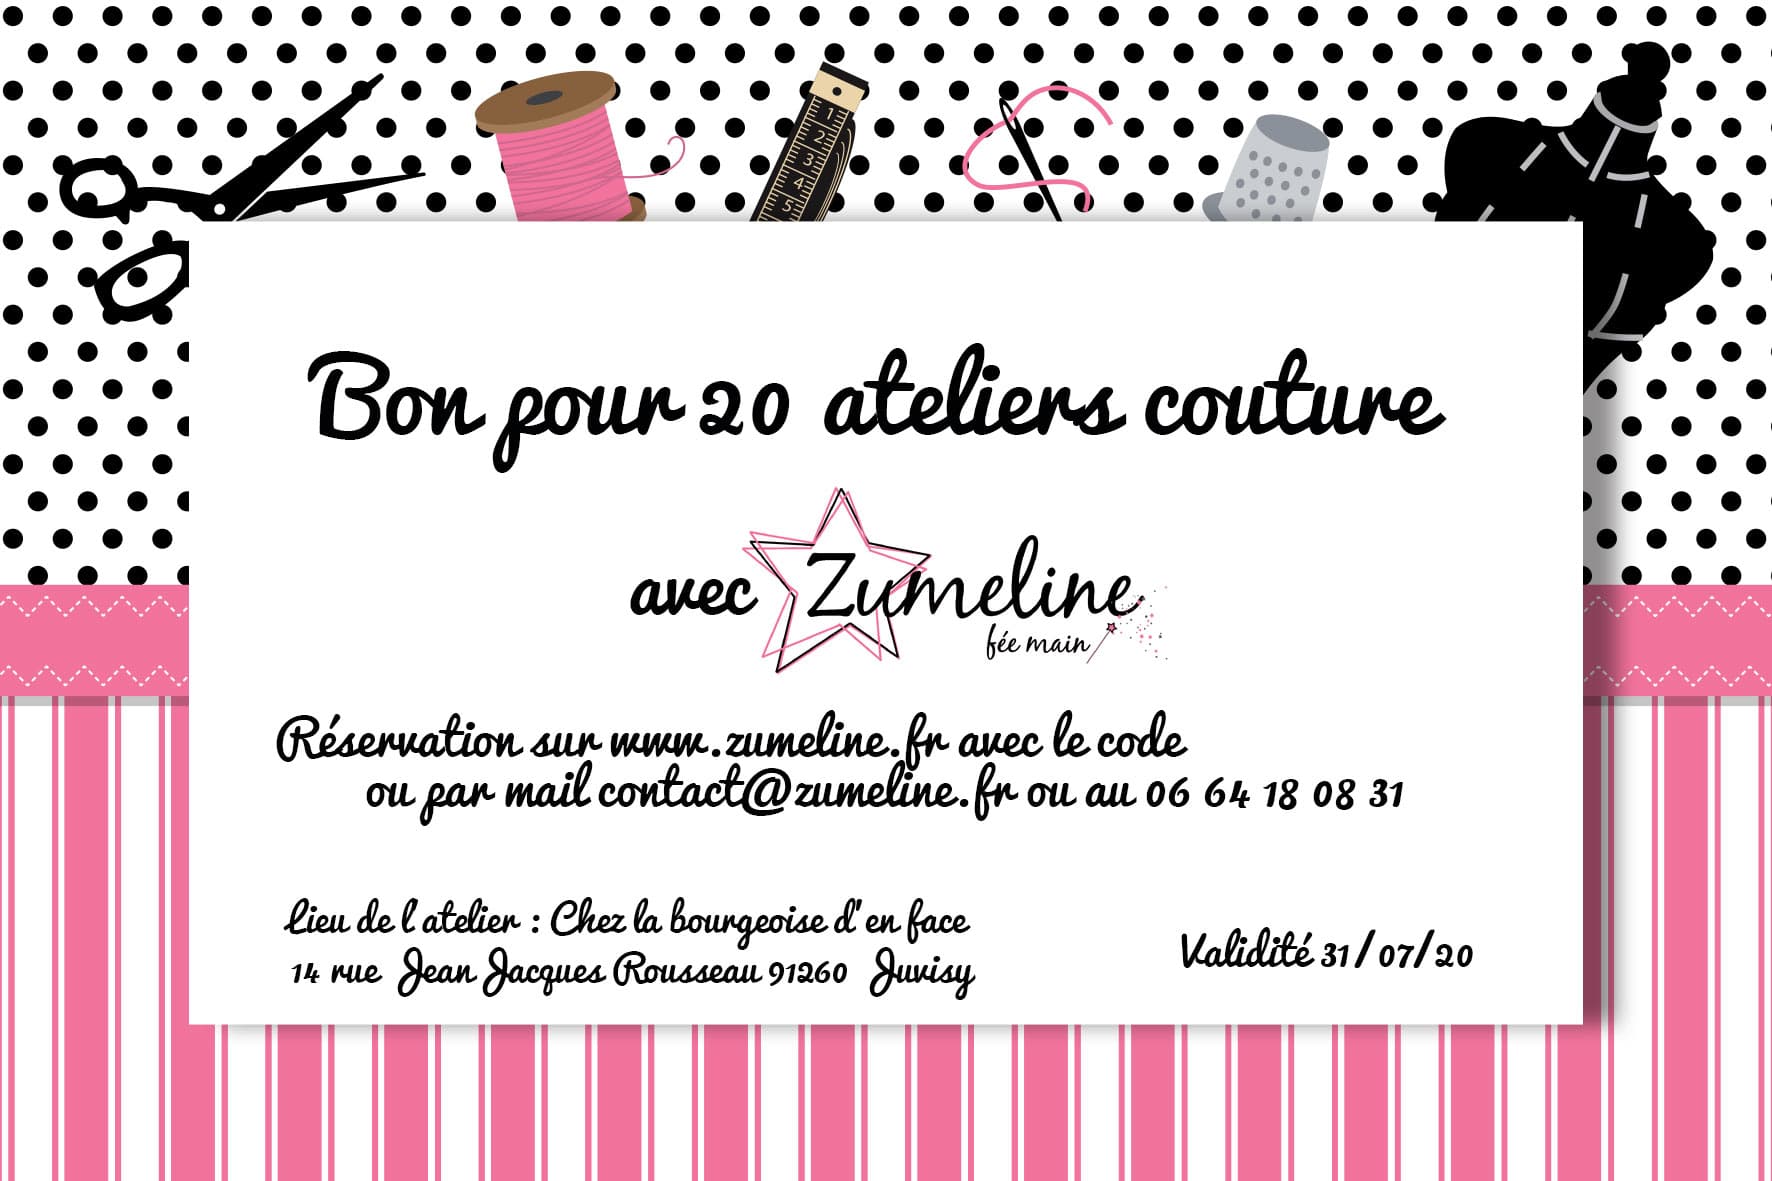 carte cadeau cheque zumeline 20 atelier couture